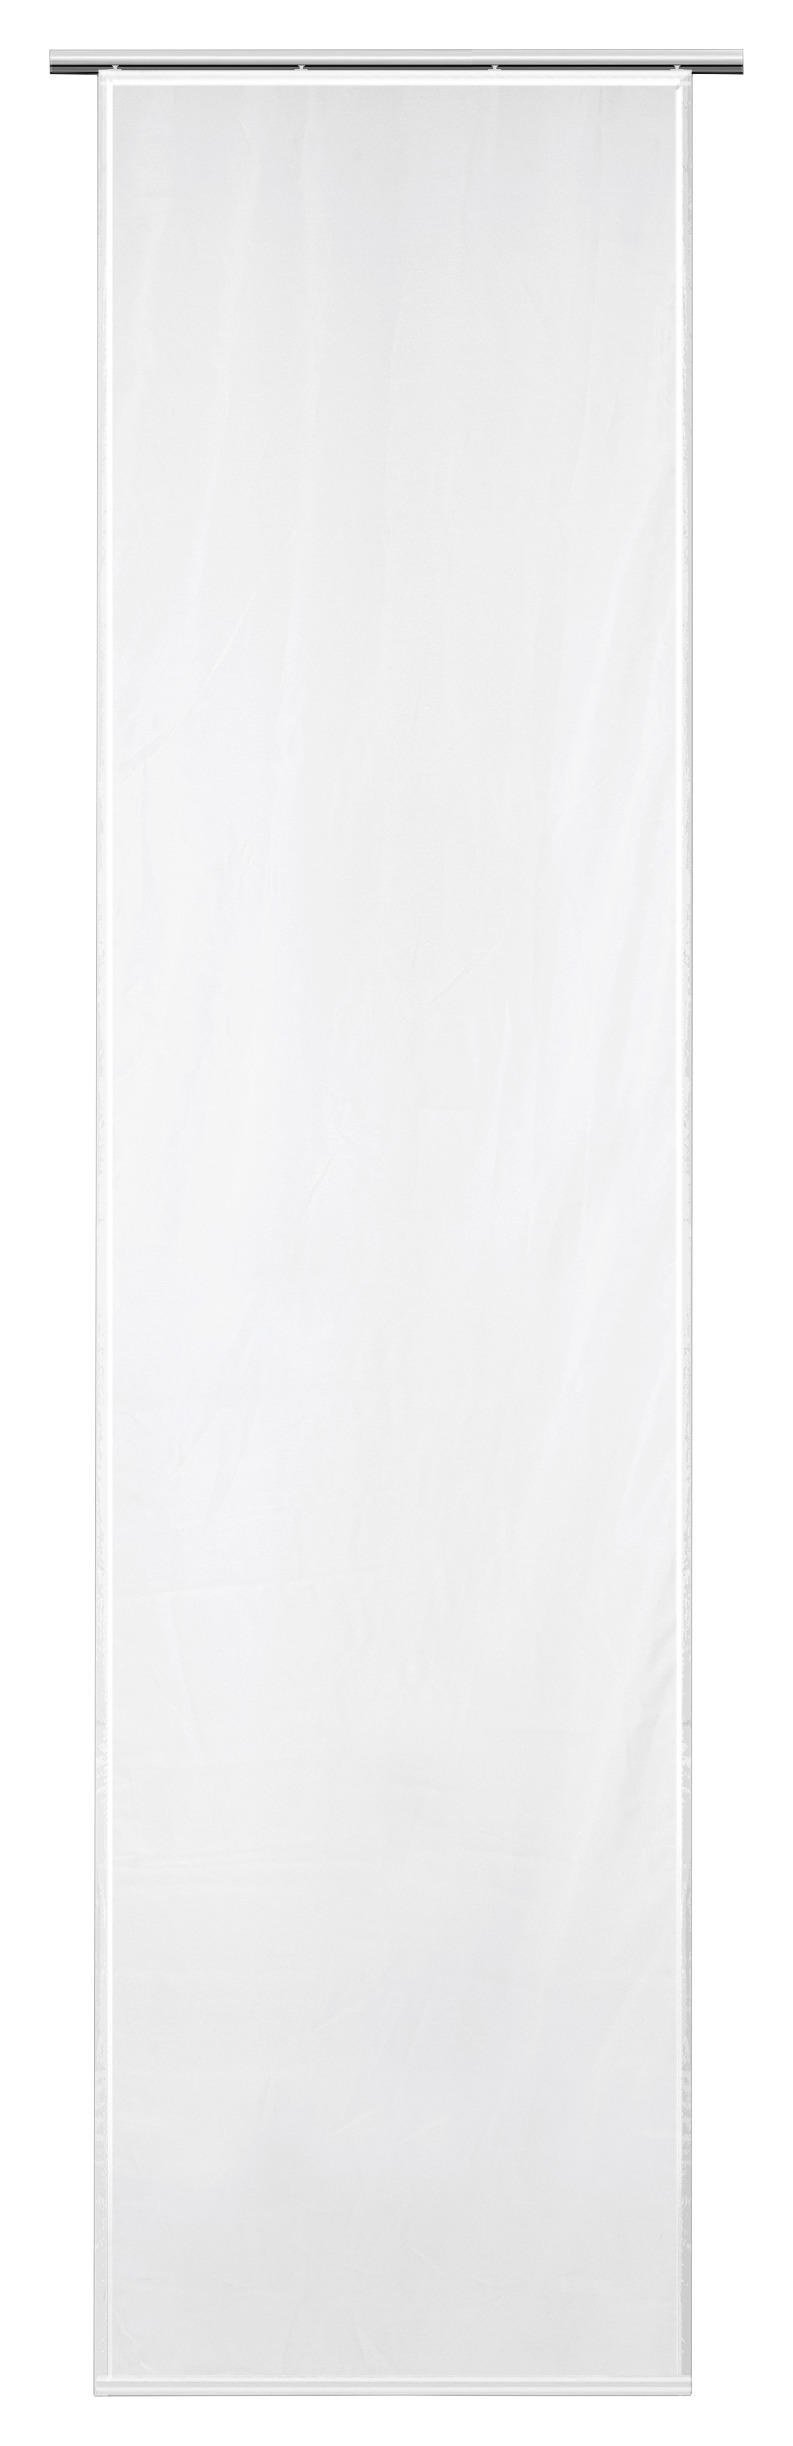 Schiebevorhang Nouveau Weiß B/l: Ca. 60x245 Cm Nouveau - weiß (60,00/245,00cm)